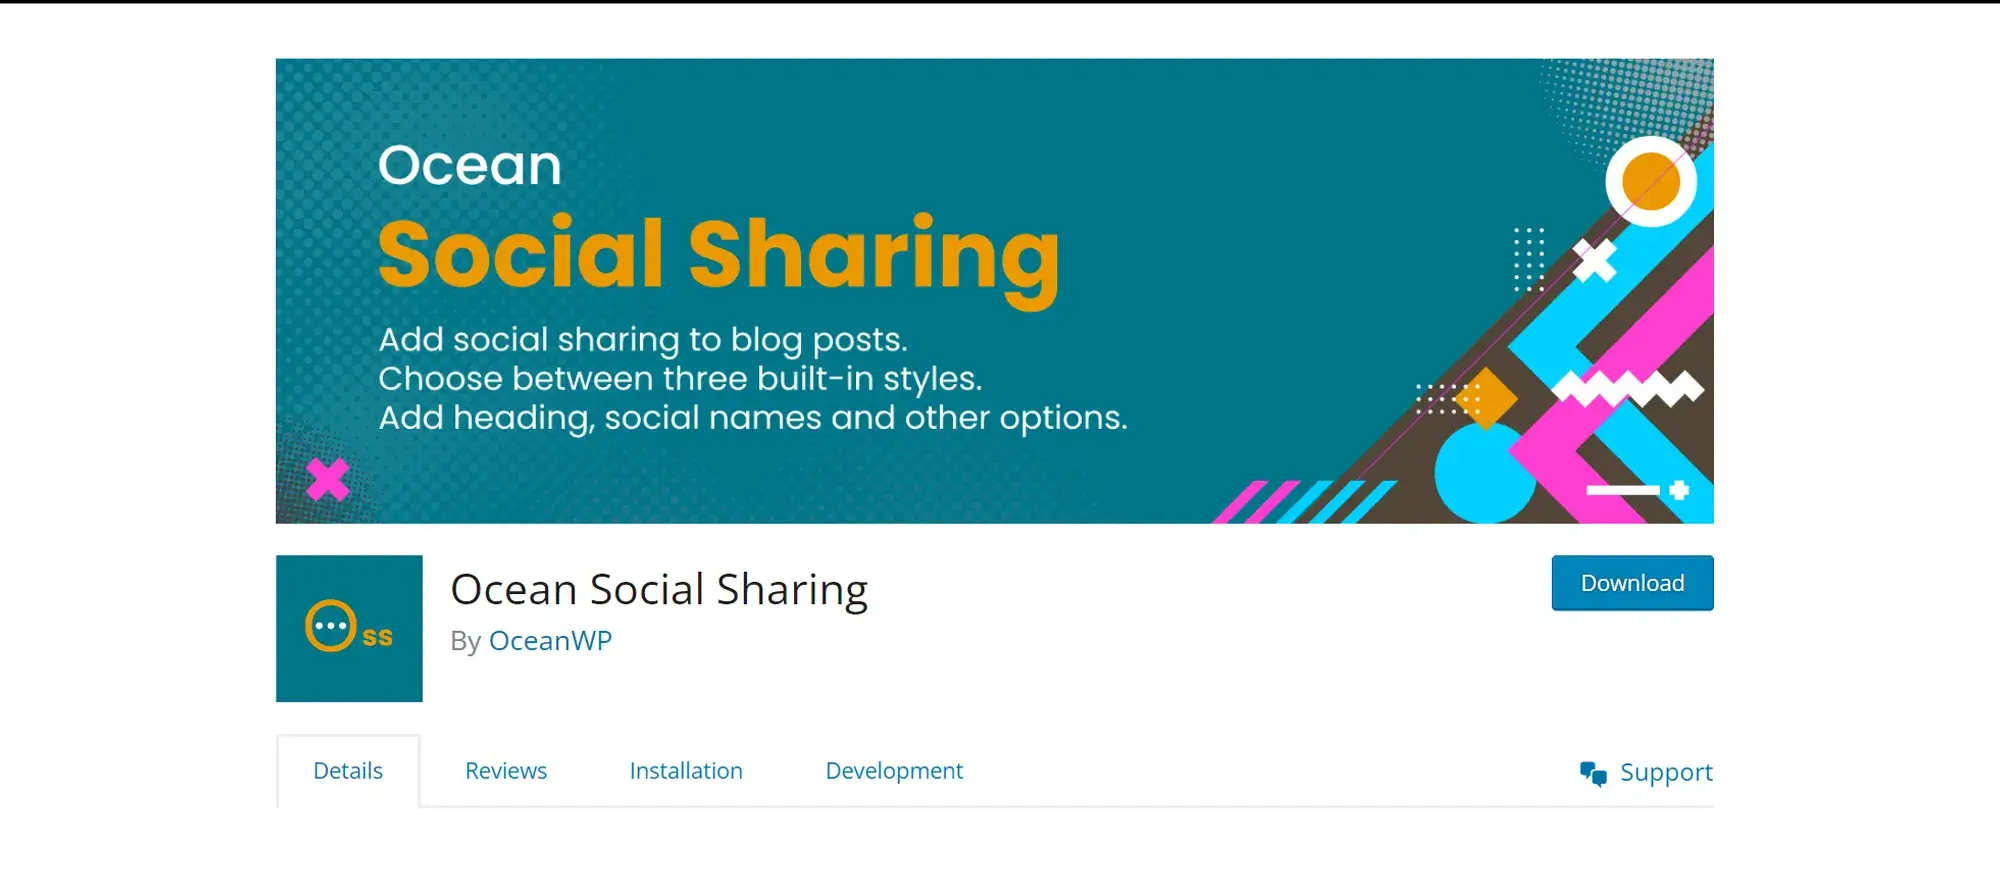 Ocean Social Sharing